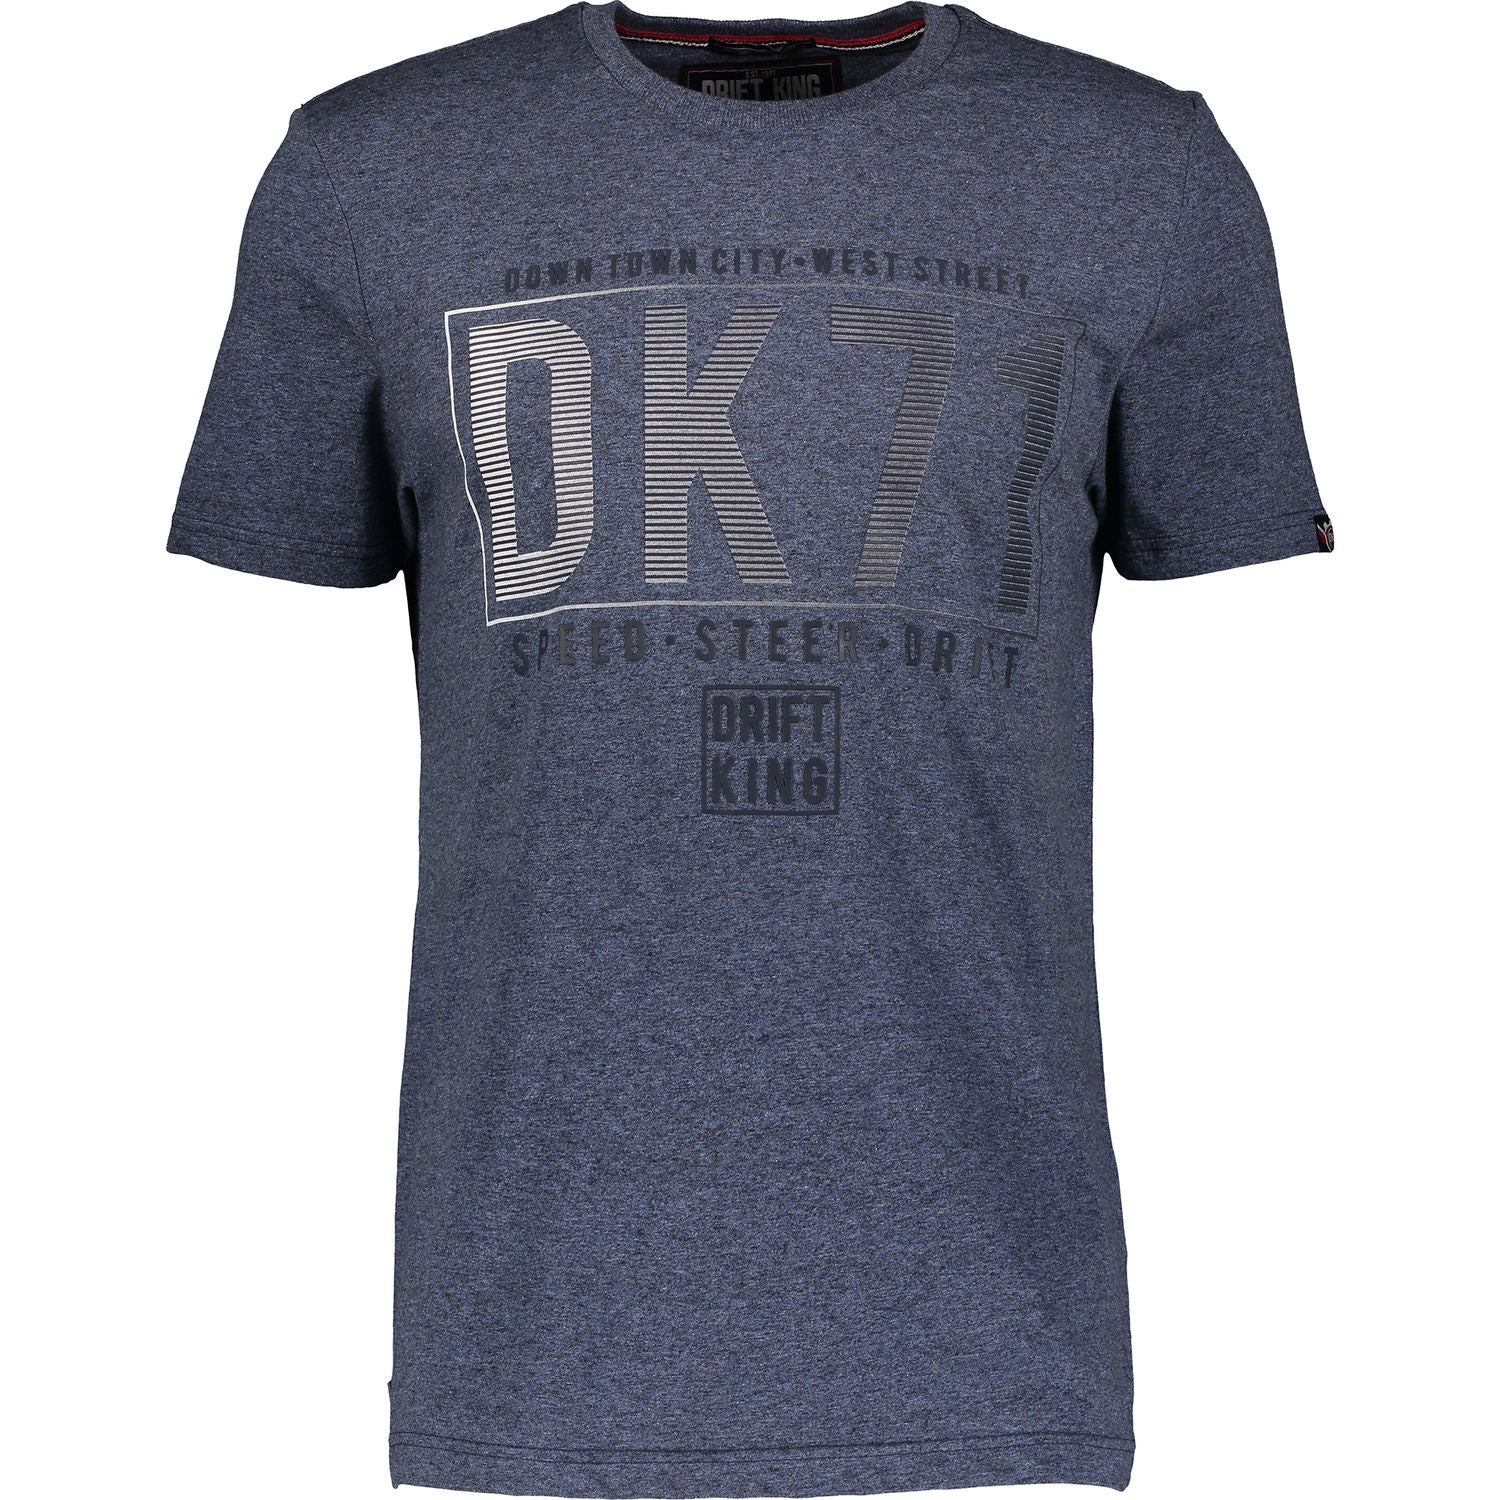 Drift King - Touring T-Shirt - LabelledUp.com